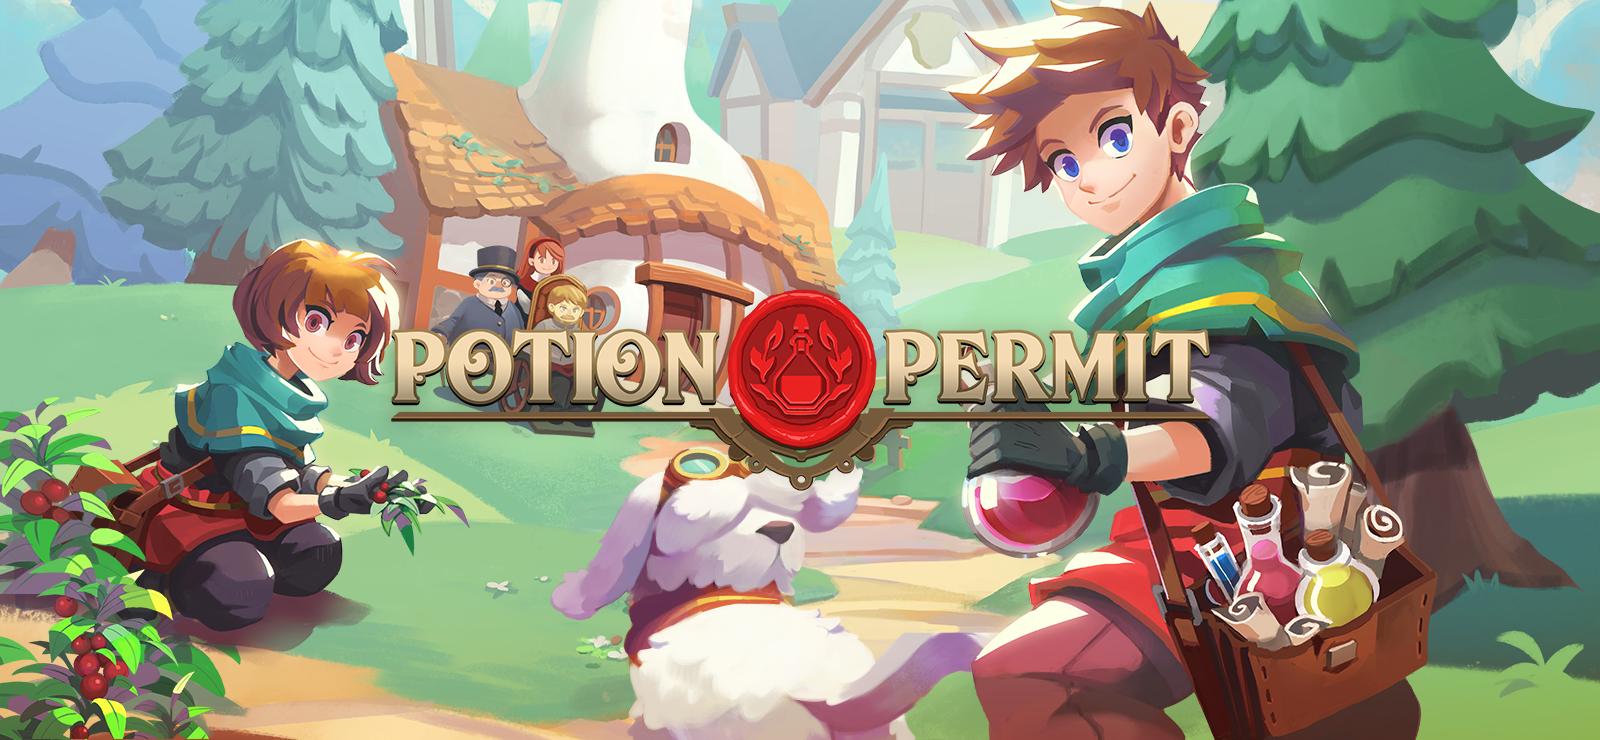 Potion Permit - Pet Bundle